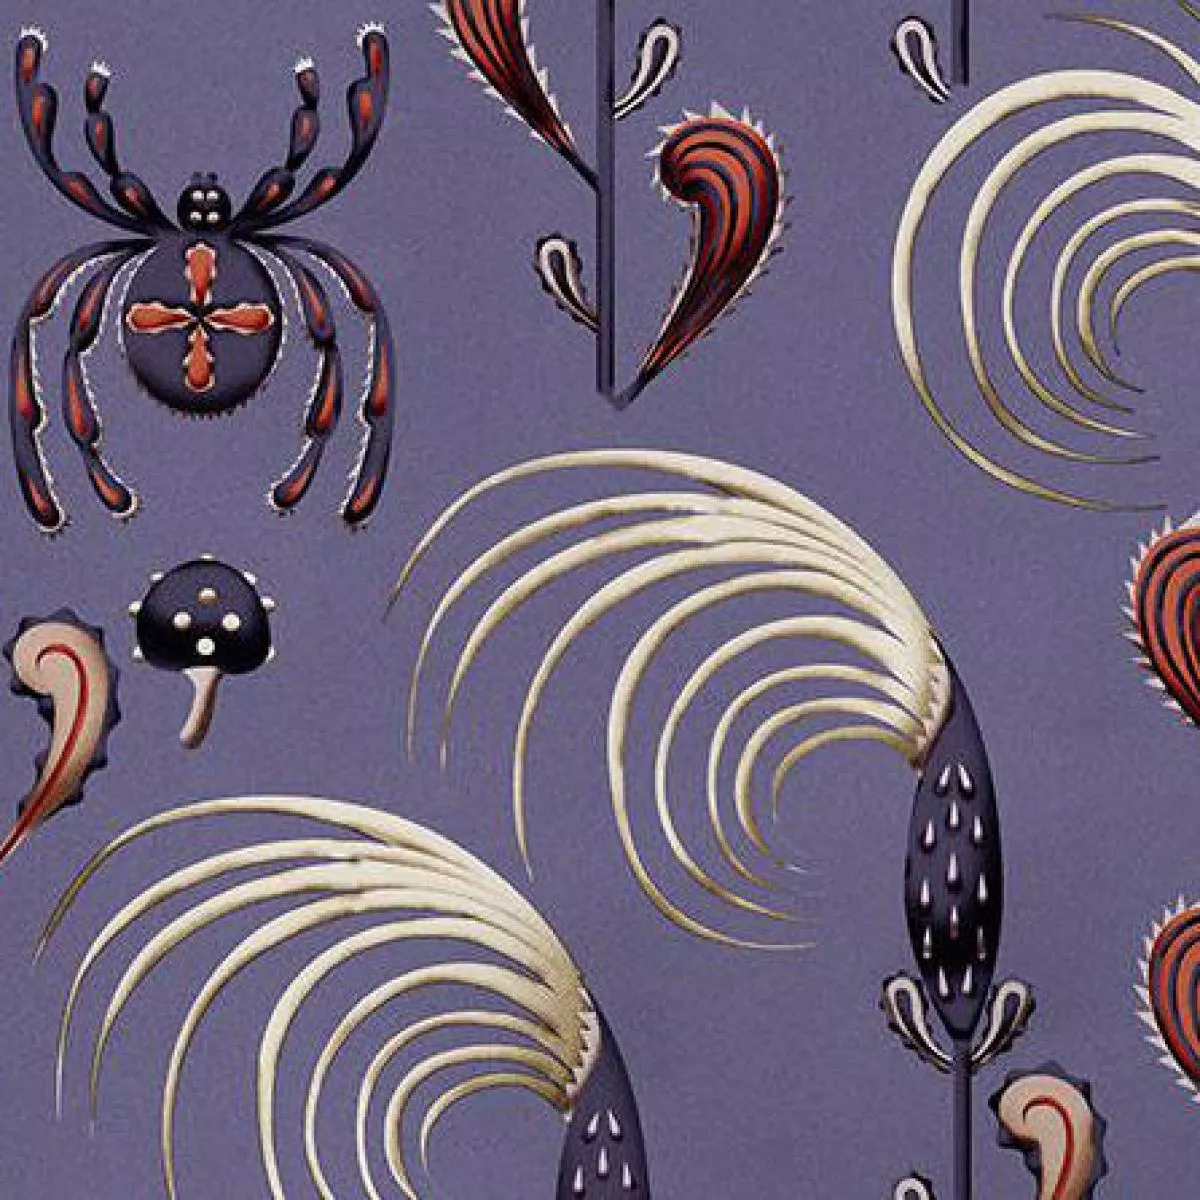 Kunstvolle Tapete "Spinne" aus Vliespapier